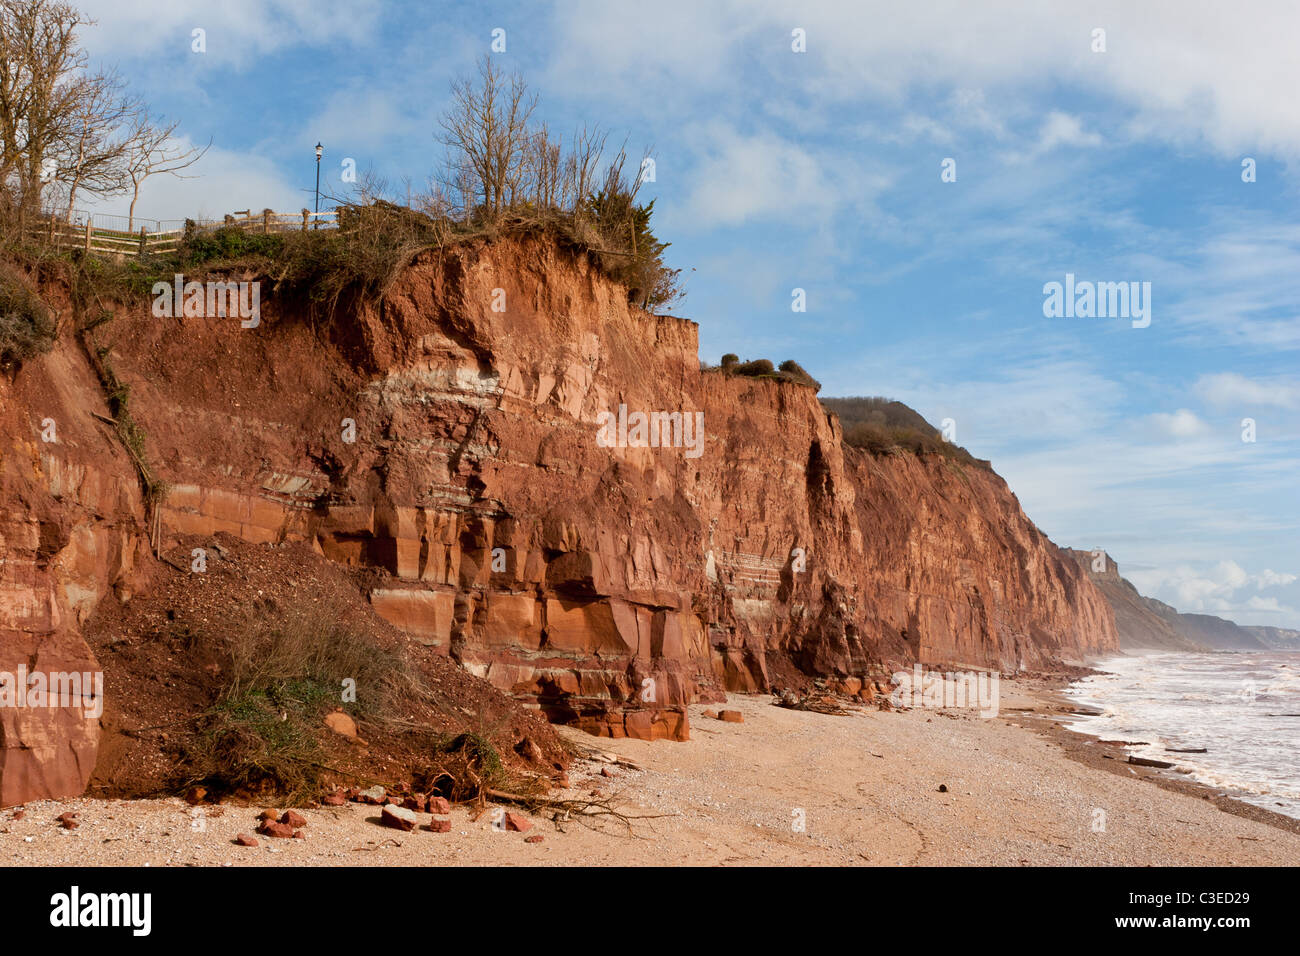 Scogliere di arenaria a Sidmouth, nel Devon, in seguito ad una tempesta, mostra erosione costiera in azione Foto Stock